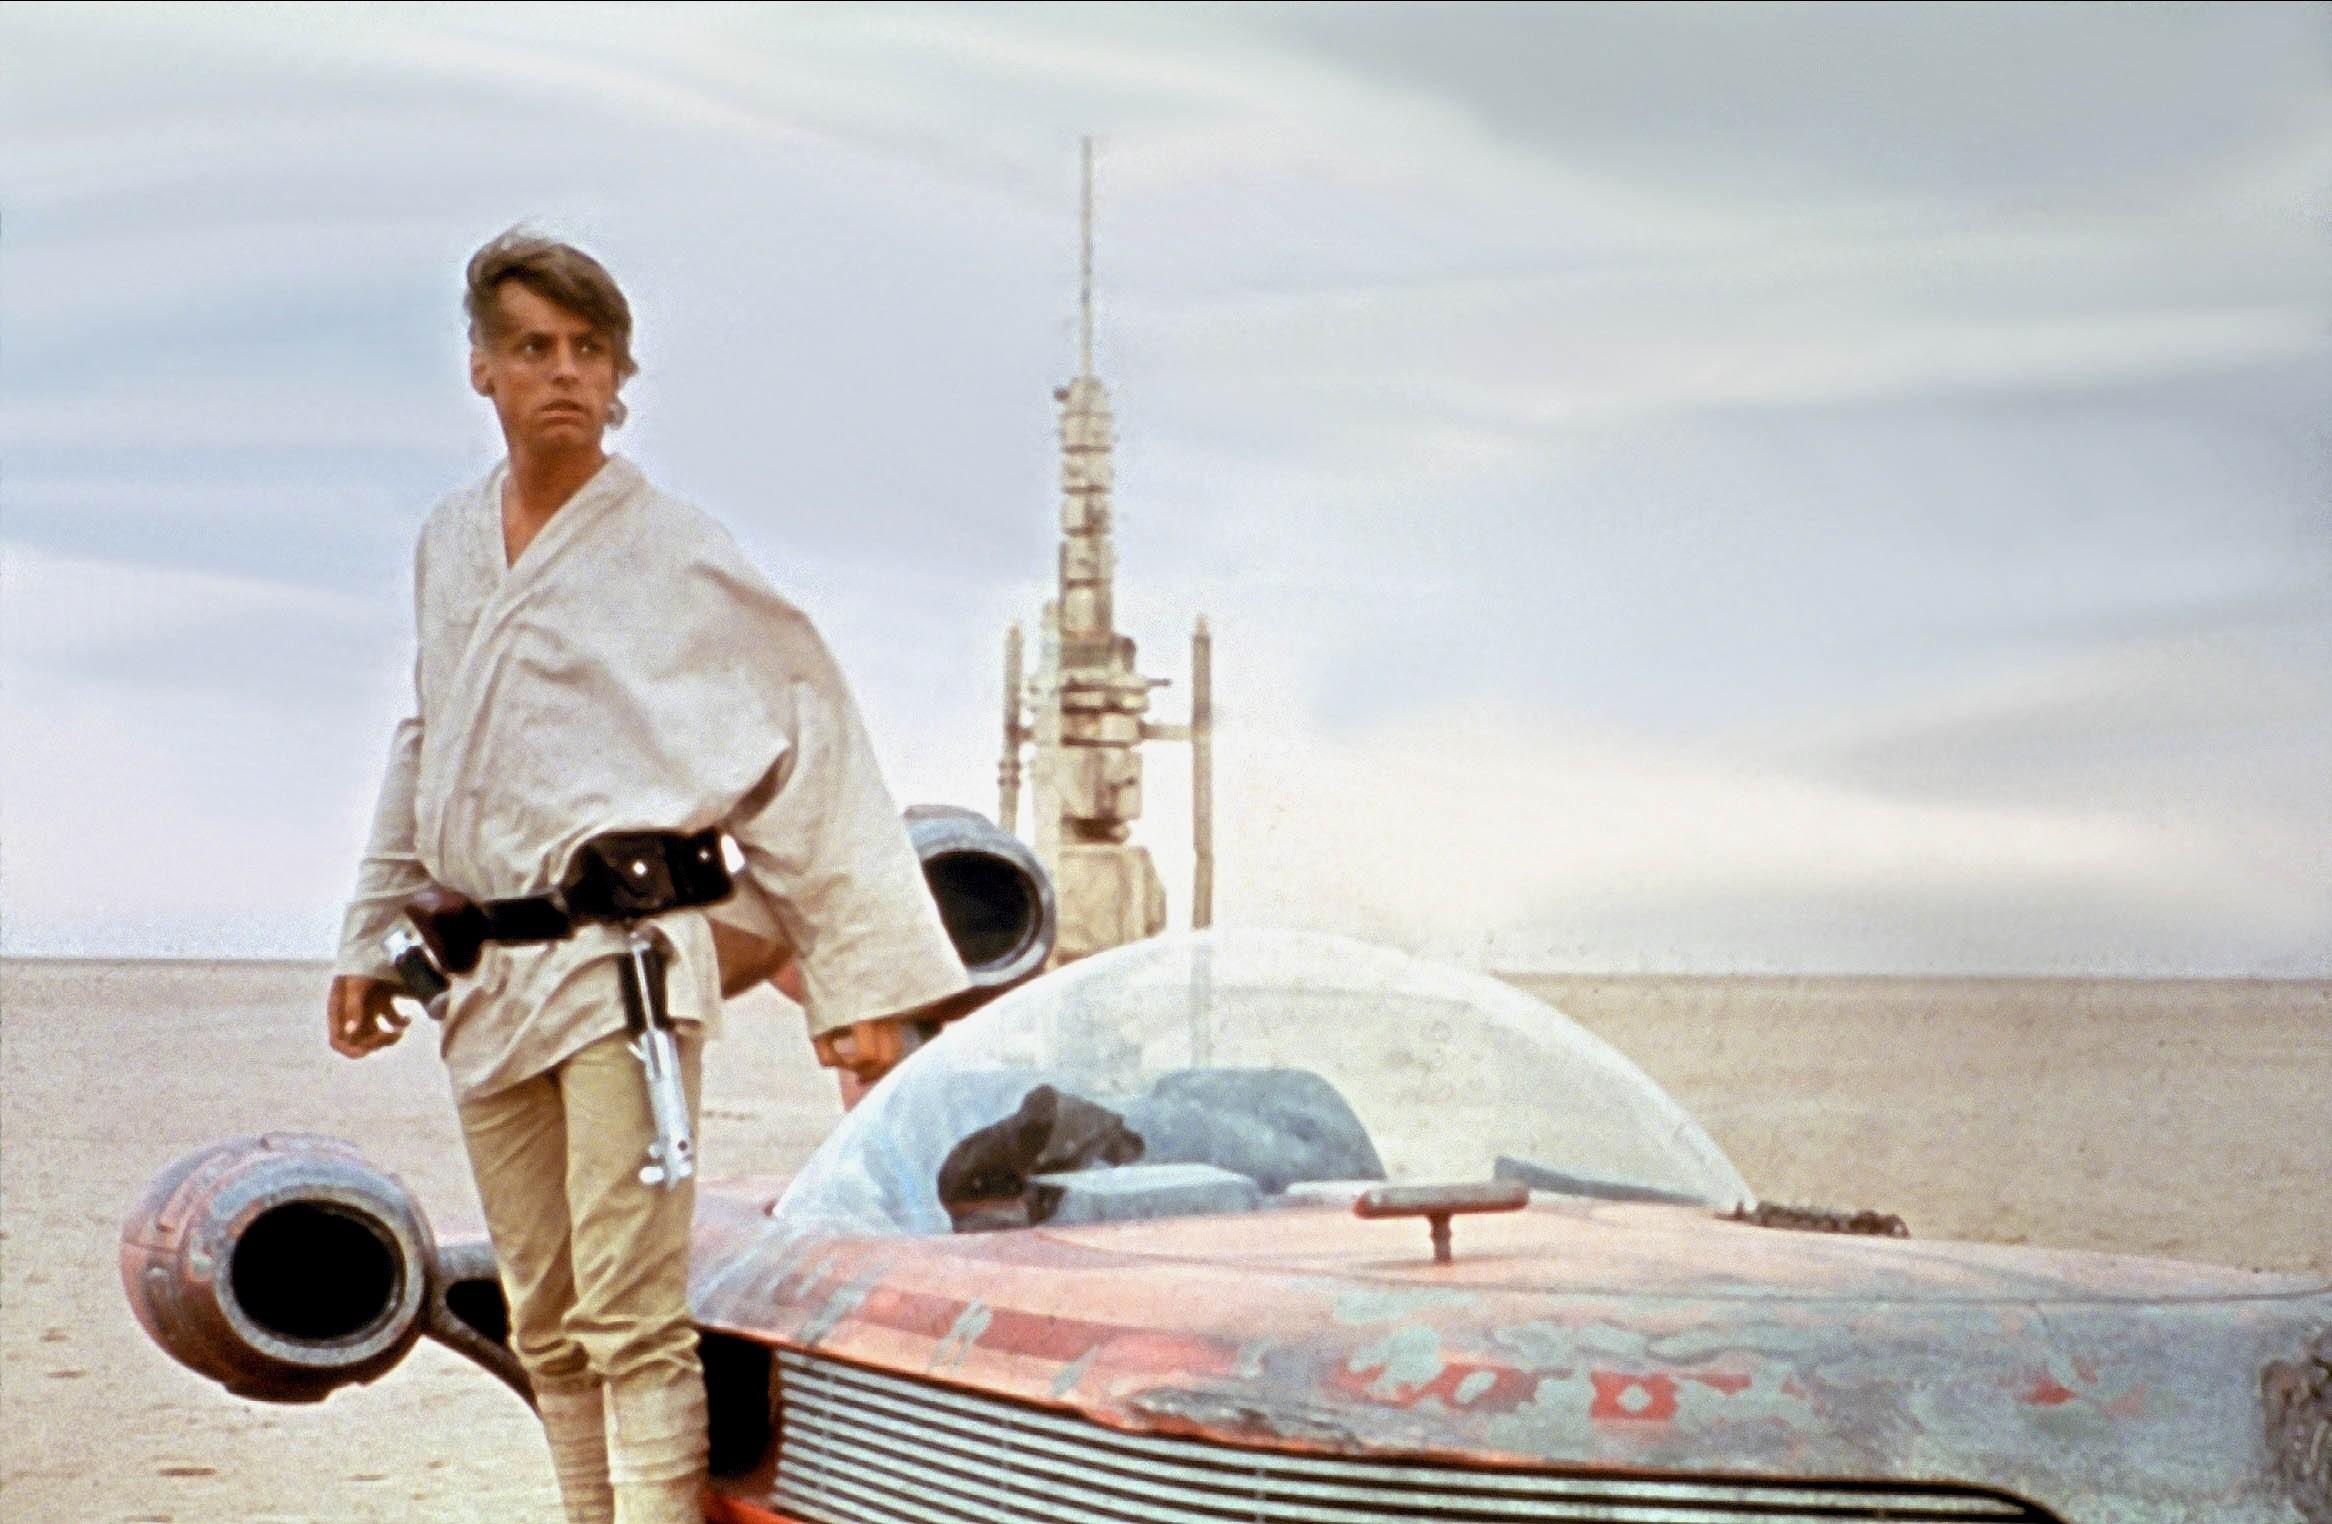 Como Luke Skywalker en Star Wars, Mark Hamill ganó fama mundial.